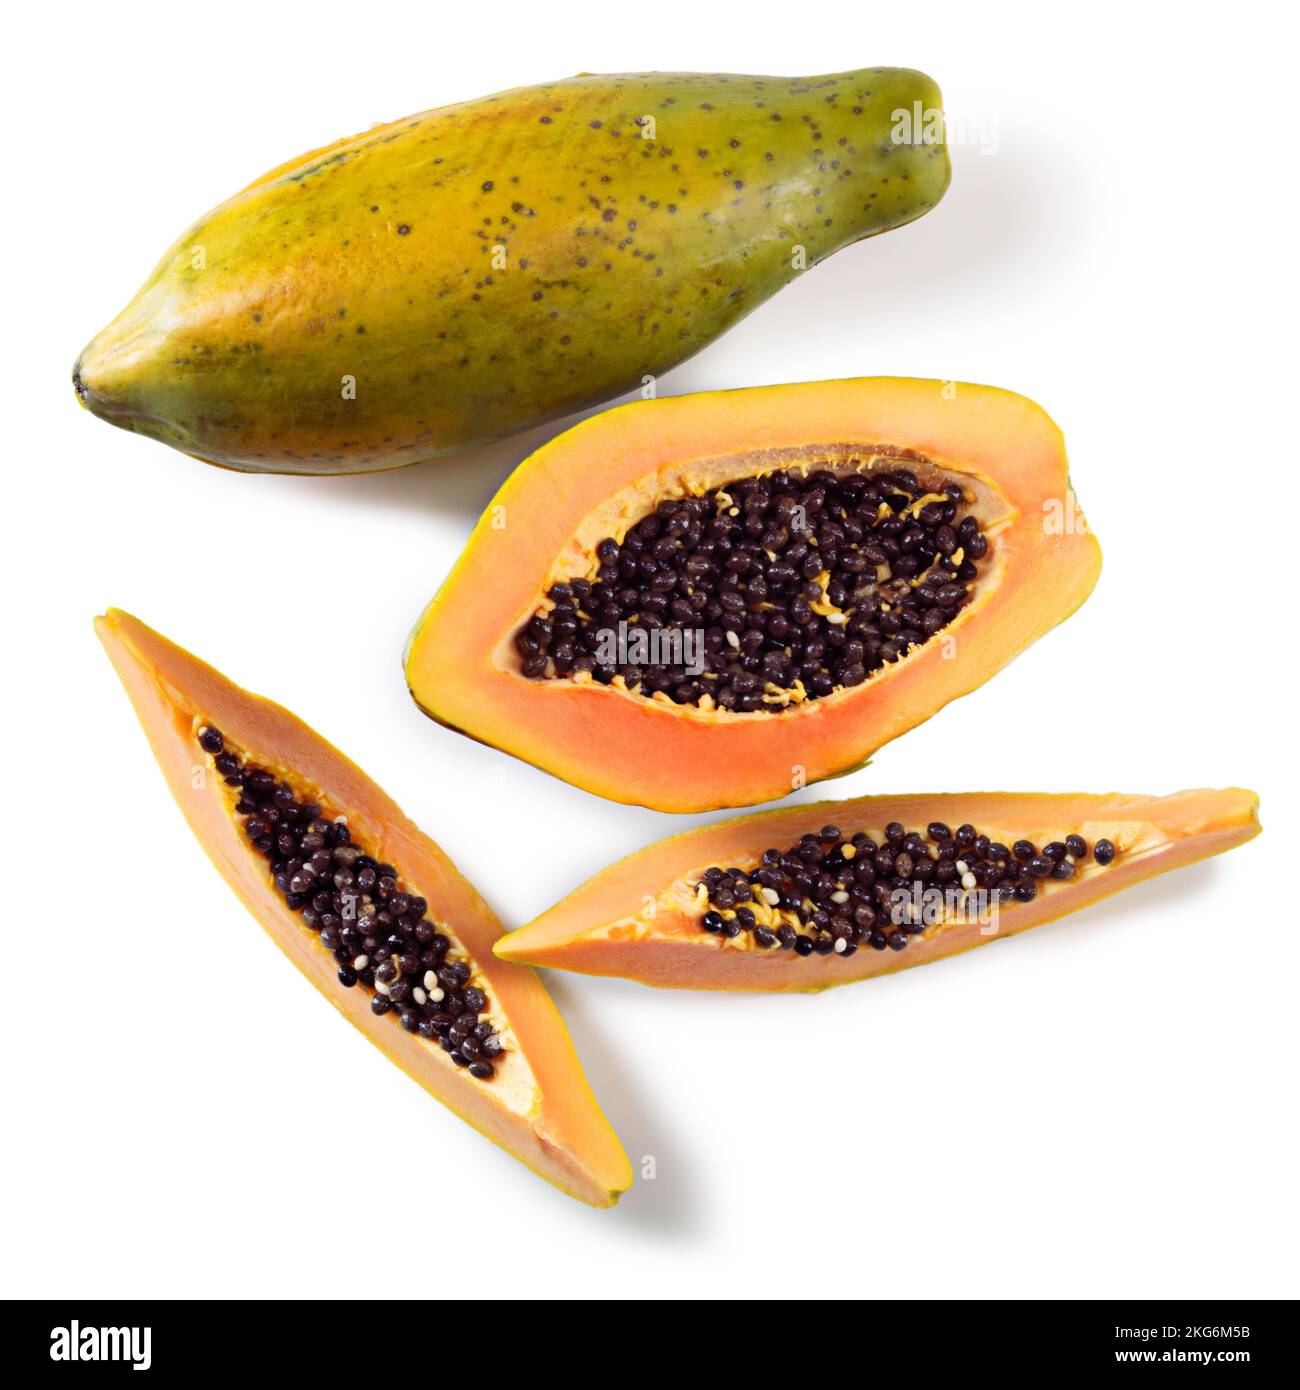 Papaya time. Studio shot of cut papaya fruit against a white background. Stock Photo